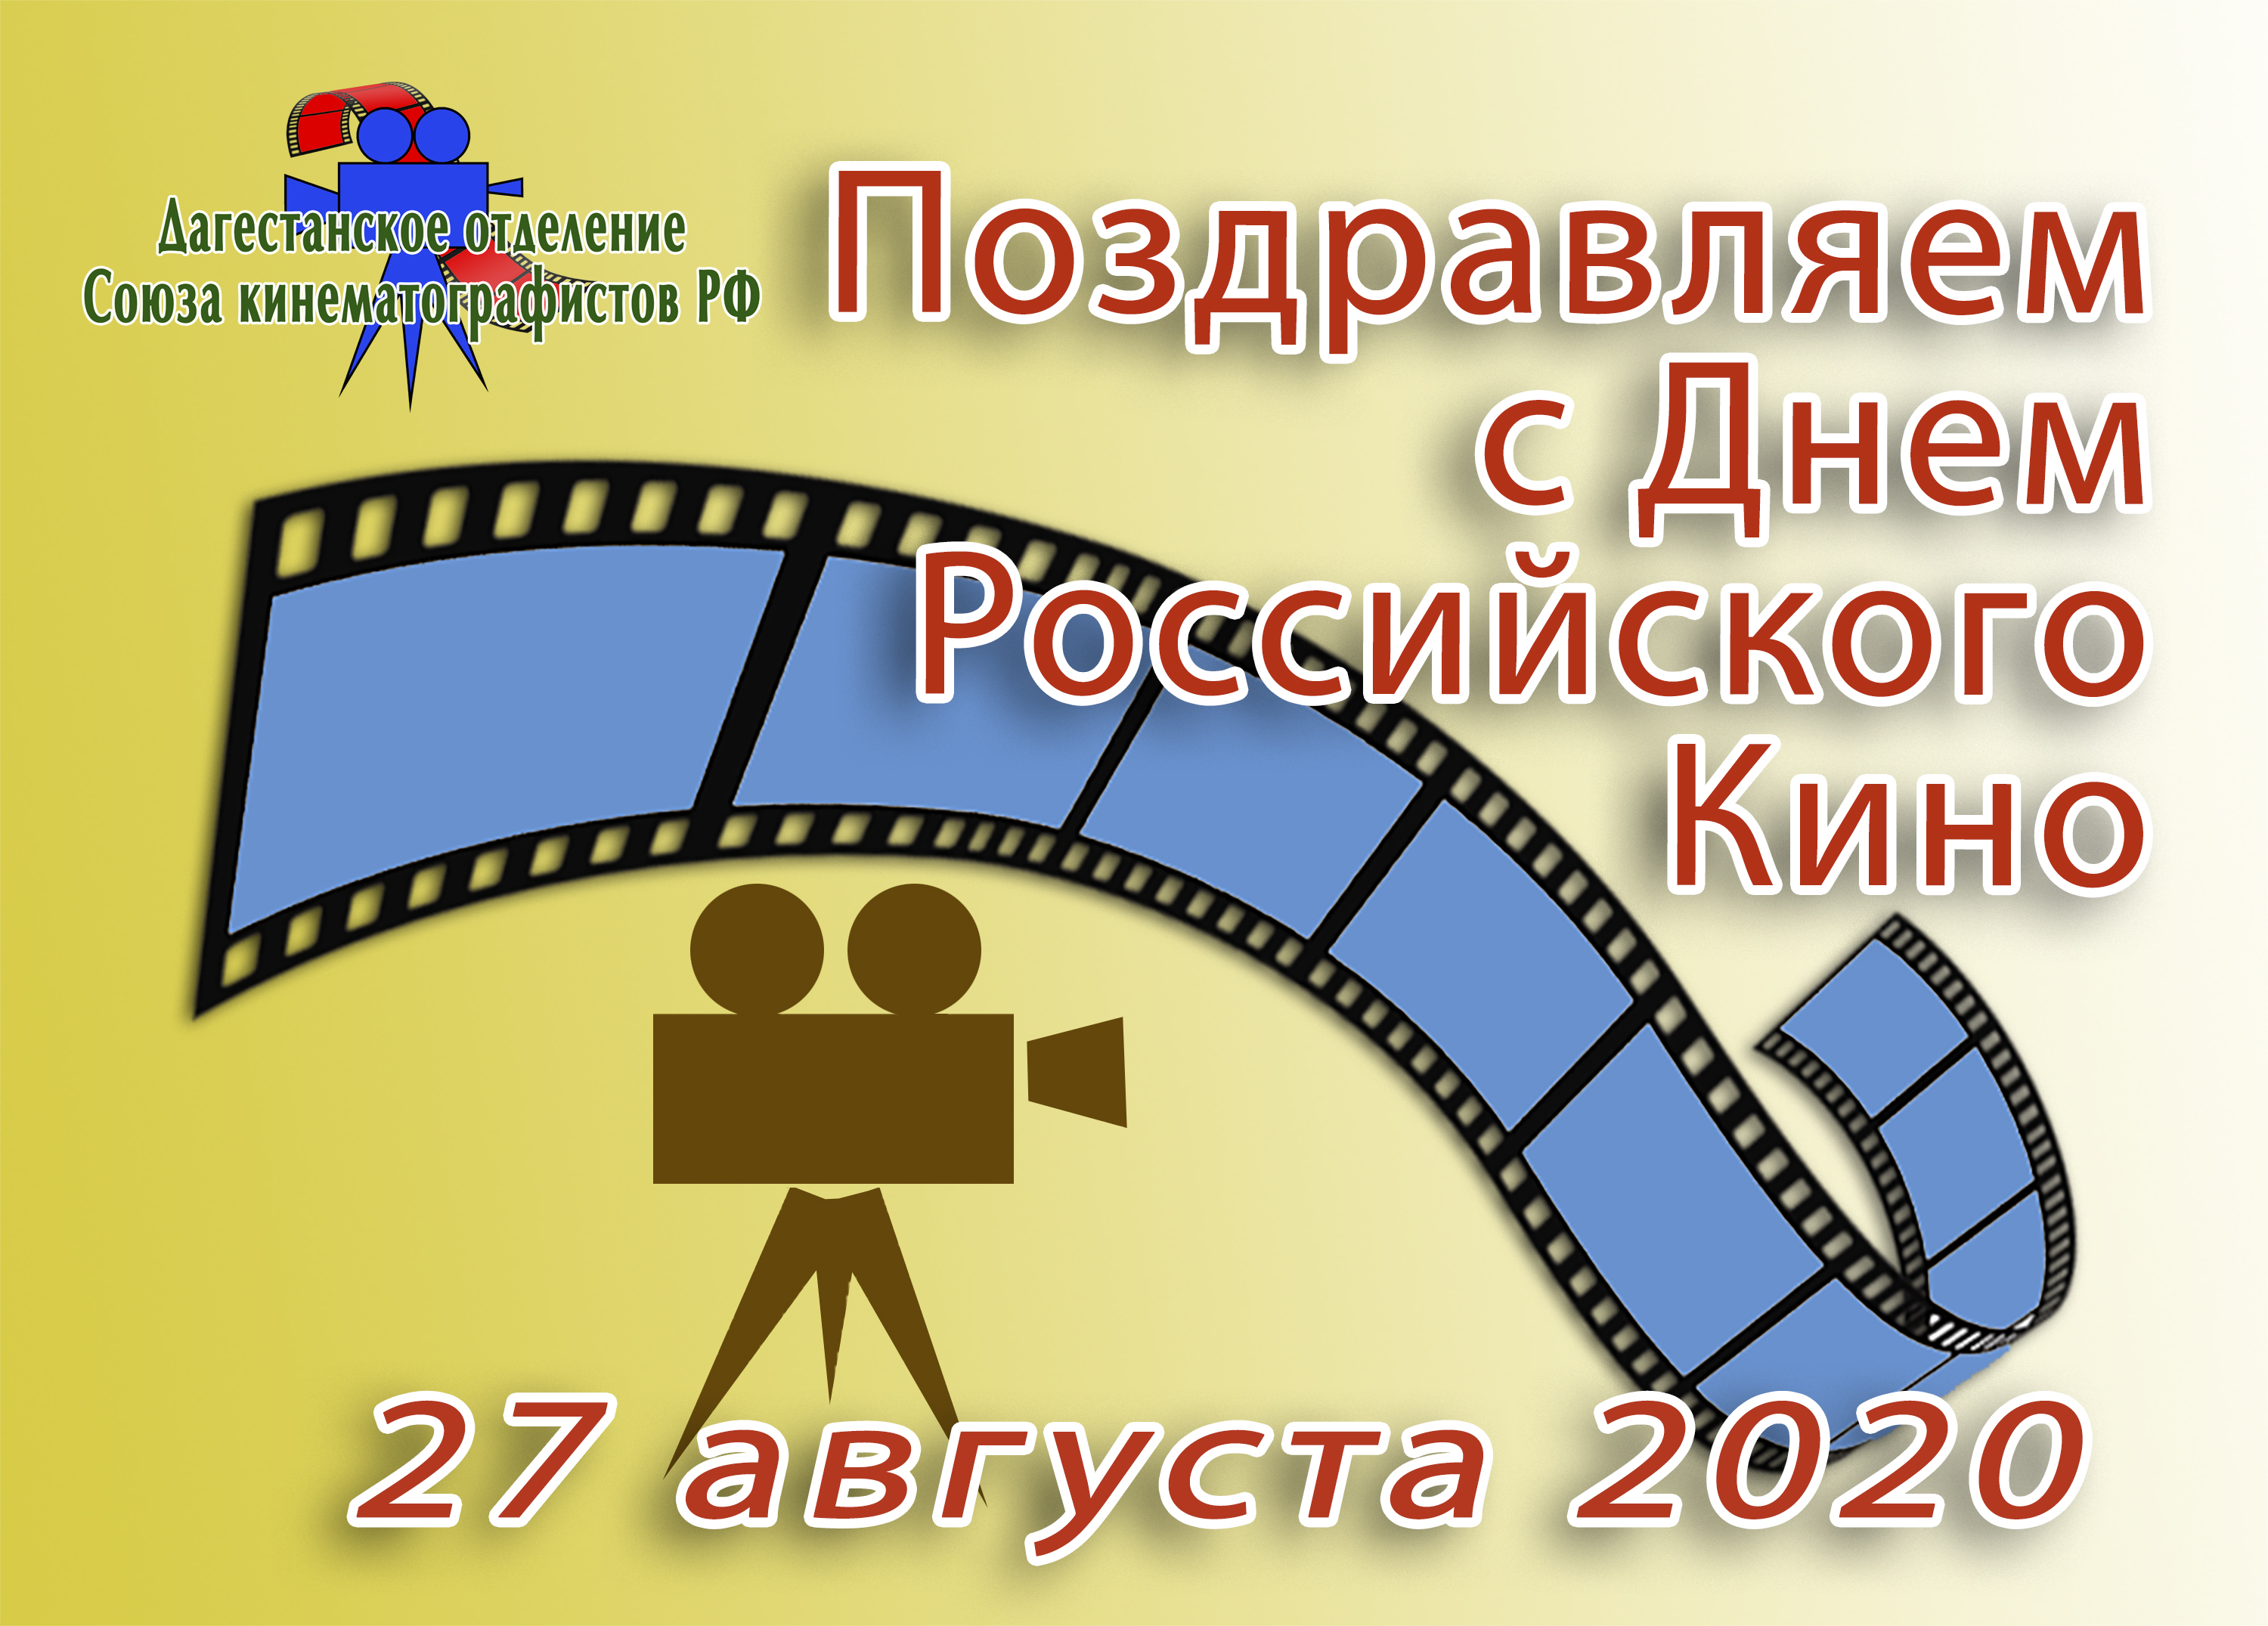 27 августа человек. День кинематографа в России.